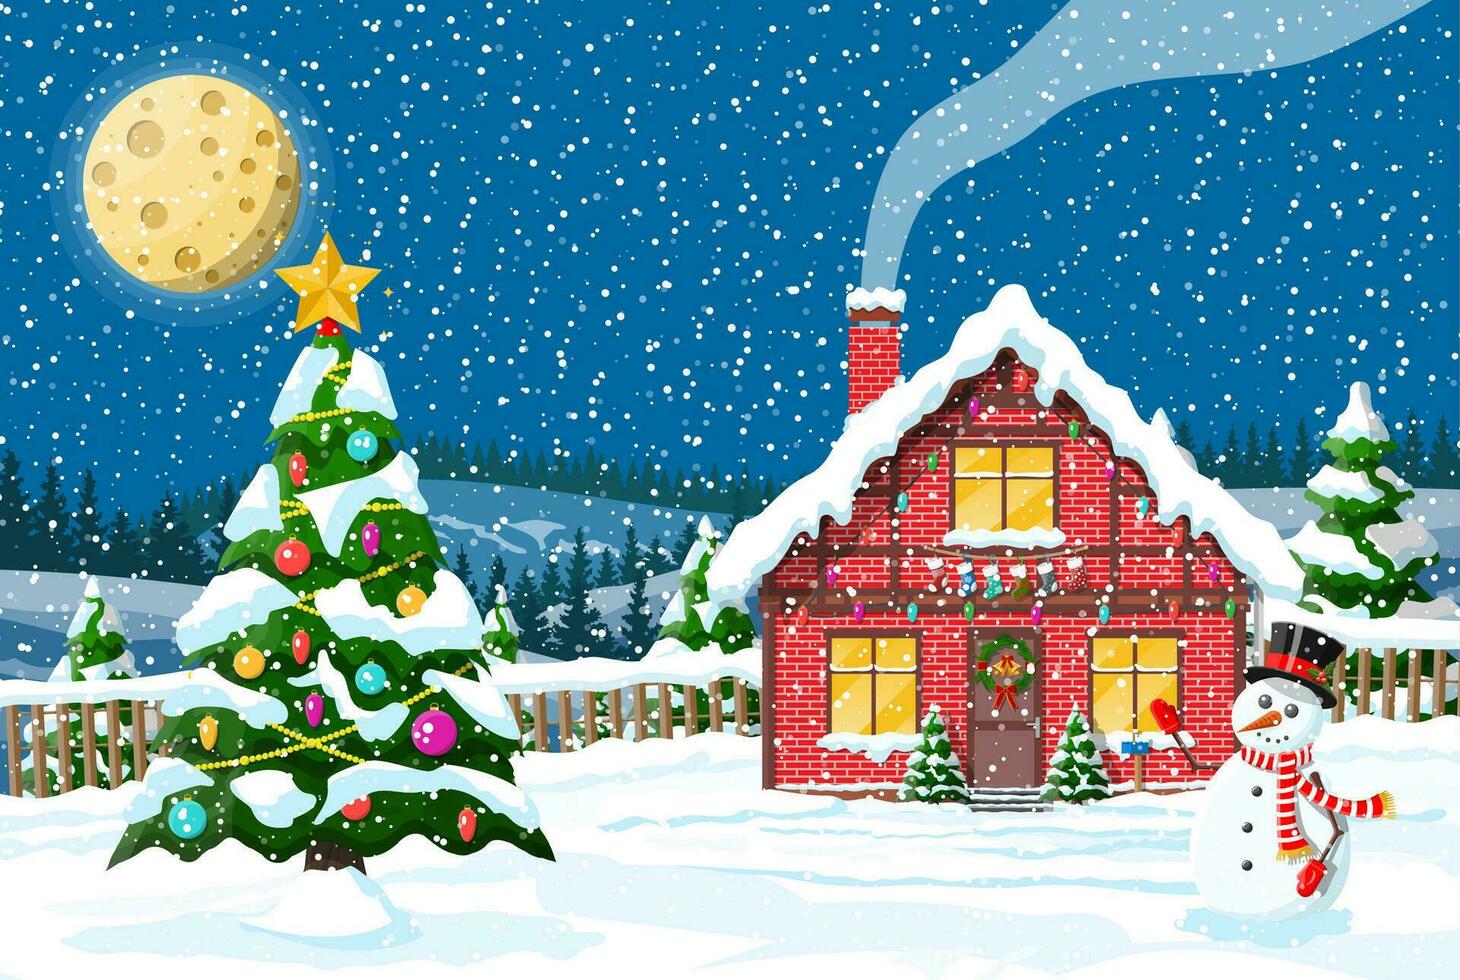 Vorort- Haus bedeckt Schnee. Gebäude im Urlaub Ornament. Weihnachten Landschaft Baum, Schneemann. Neu Jahr Dekoration. fröhlich Weihnachten Urlaub Weihnachten Feier. Vektor Illustration